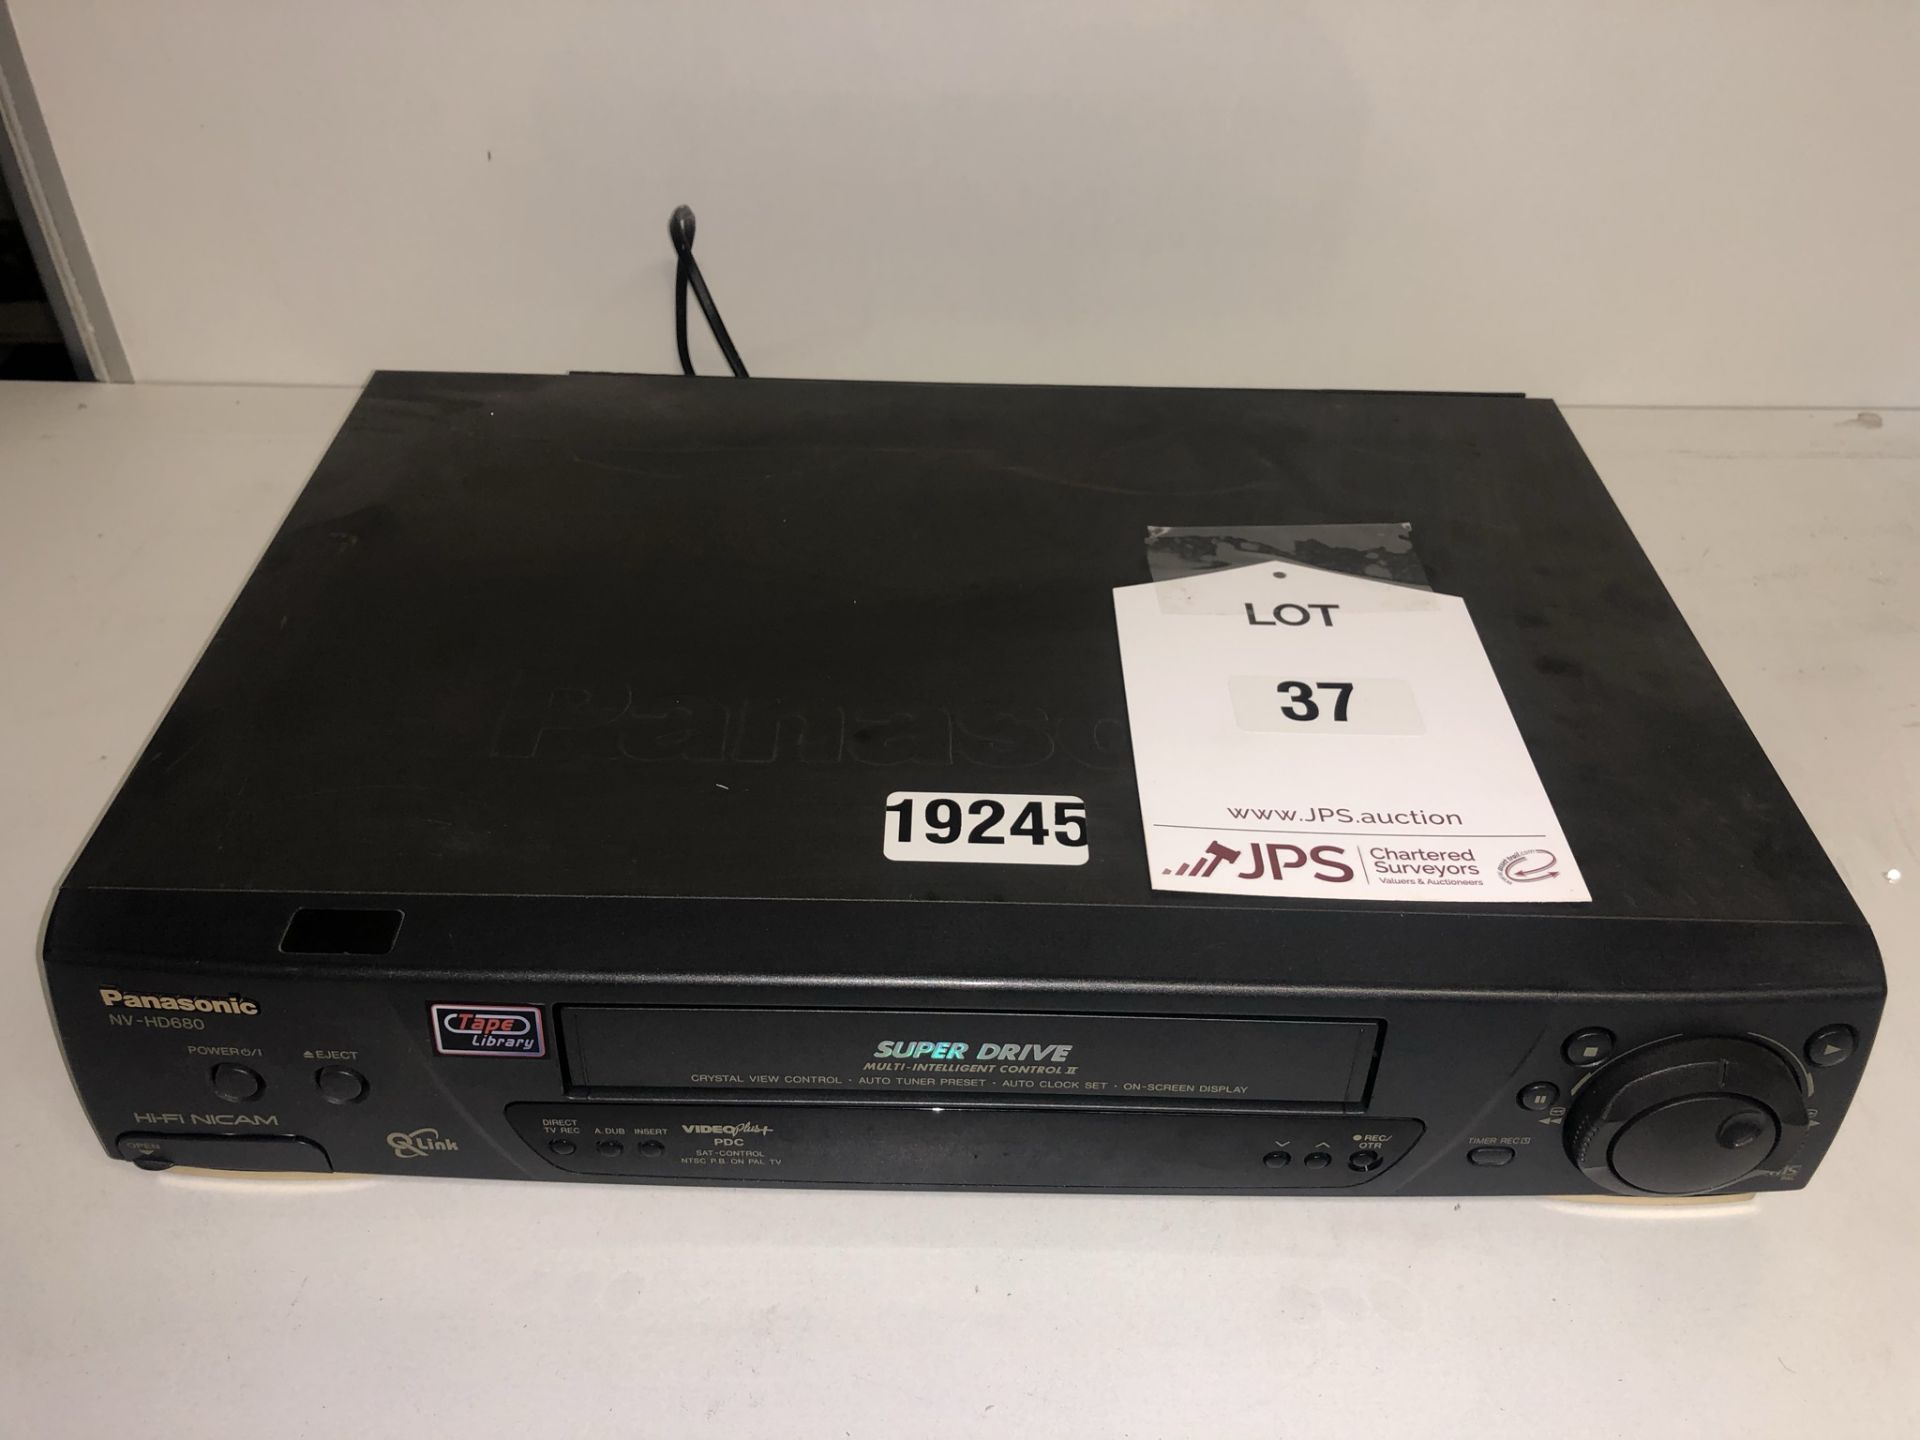 Panasonic NV-HD680 VCR Video Recorder